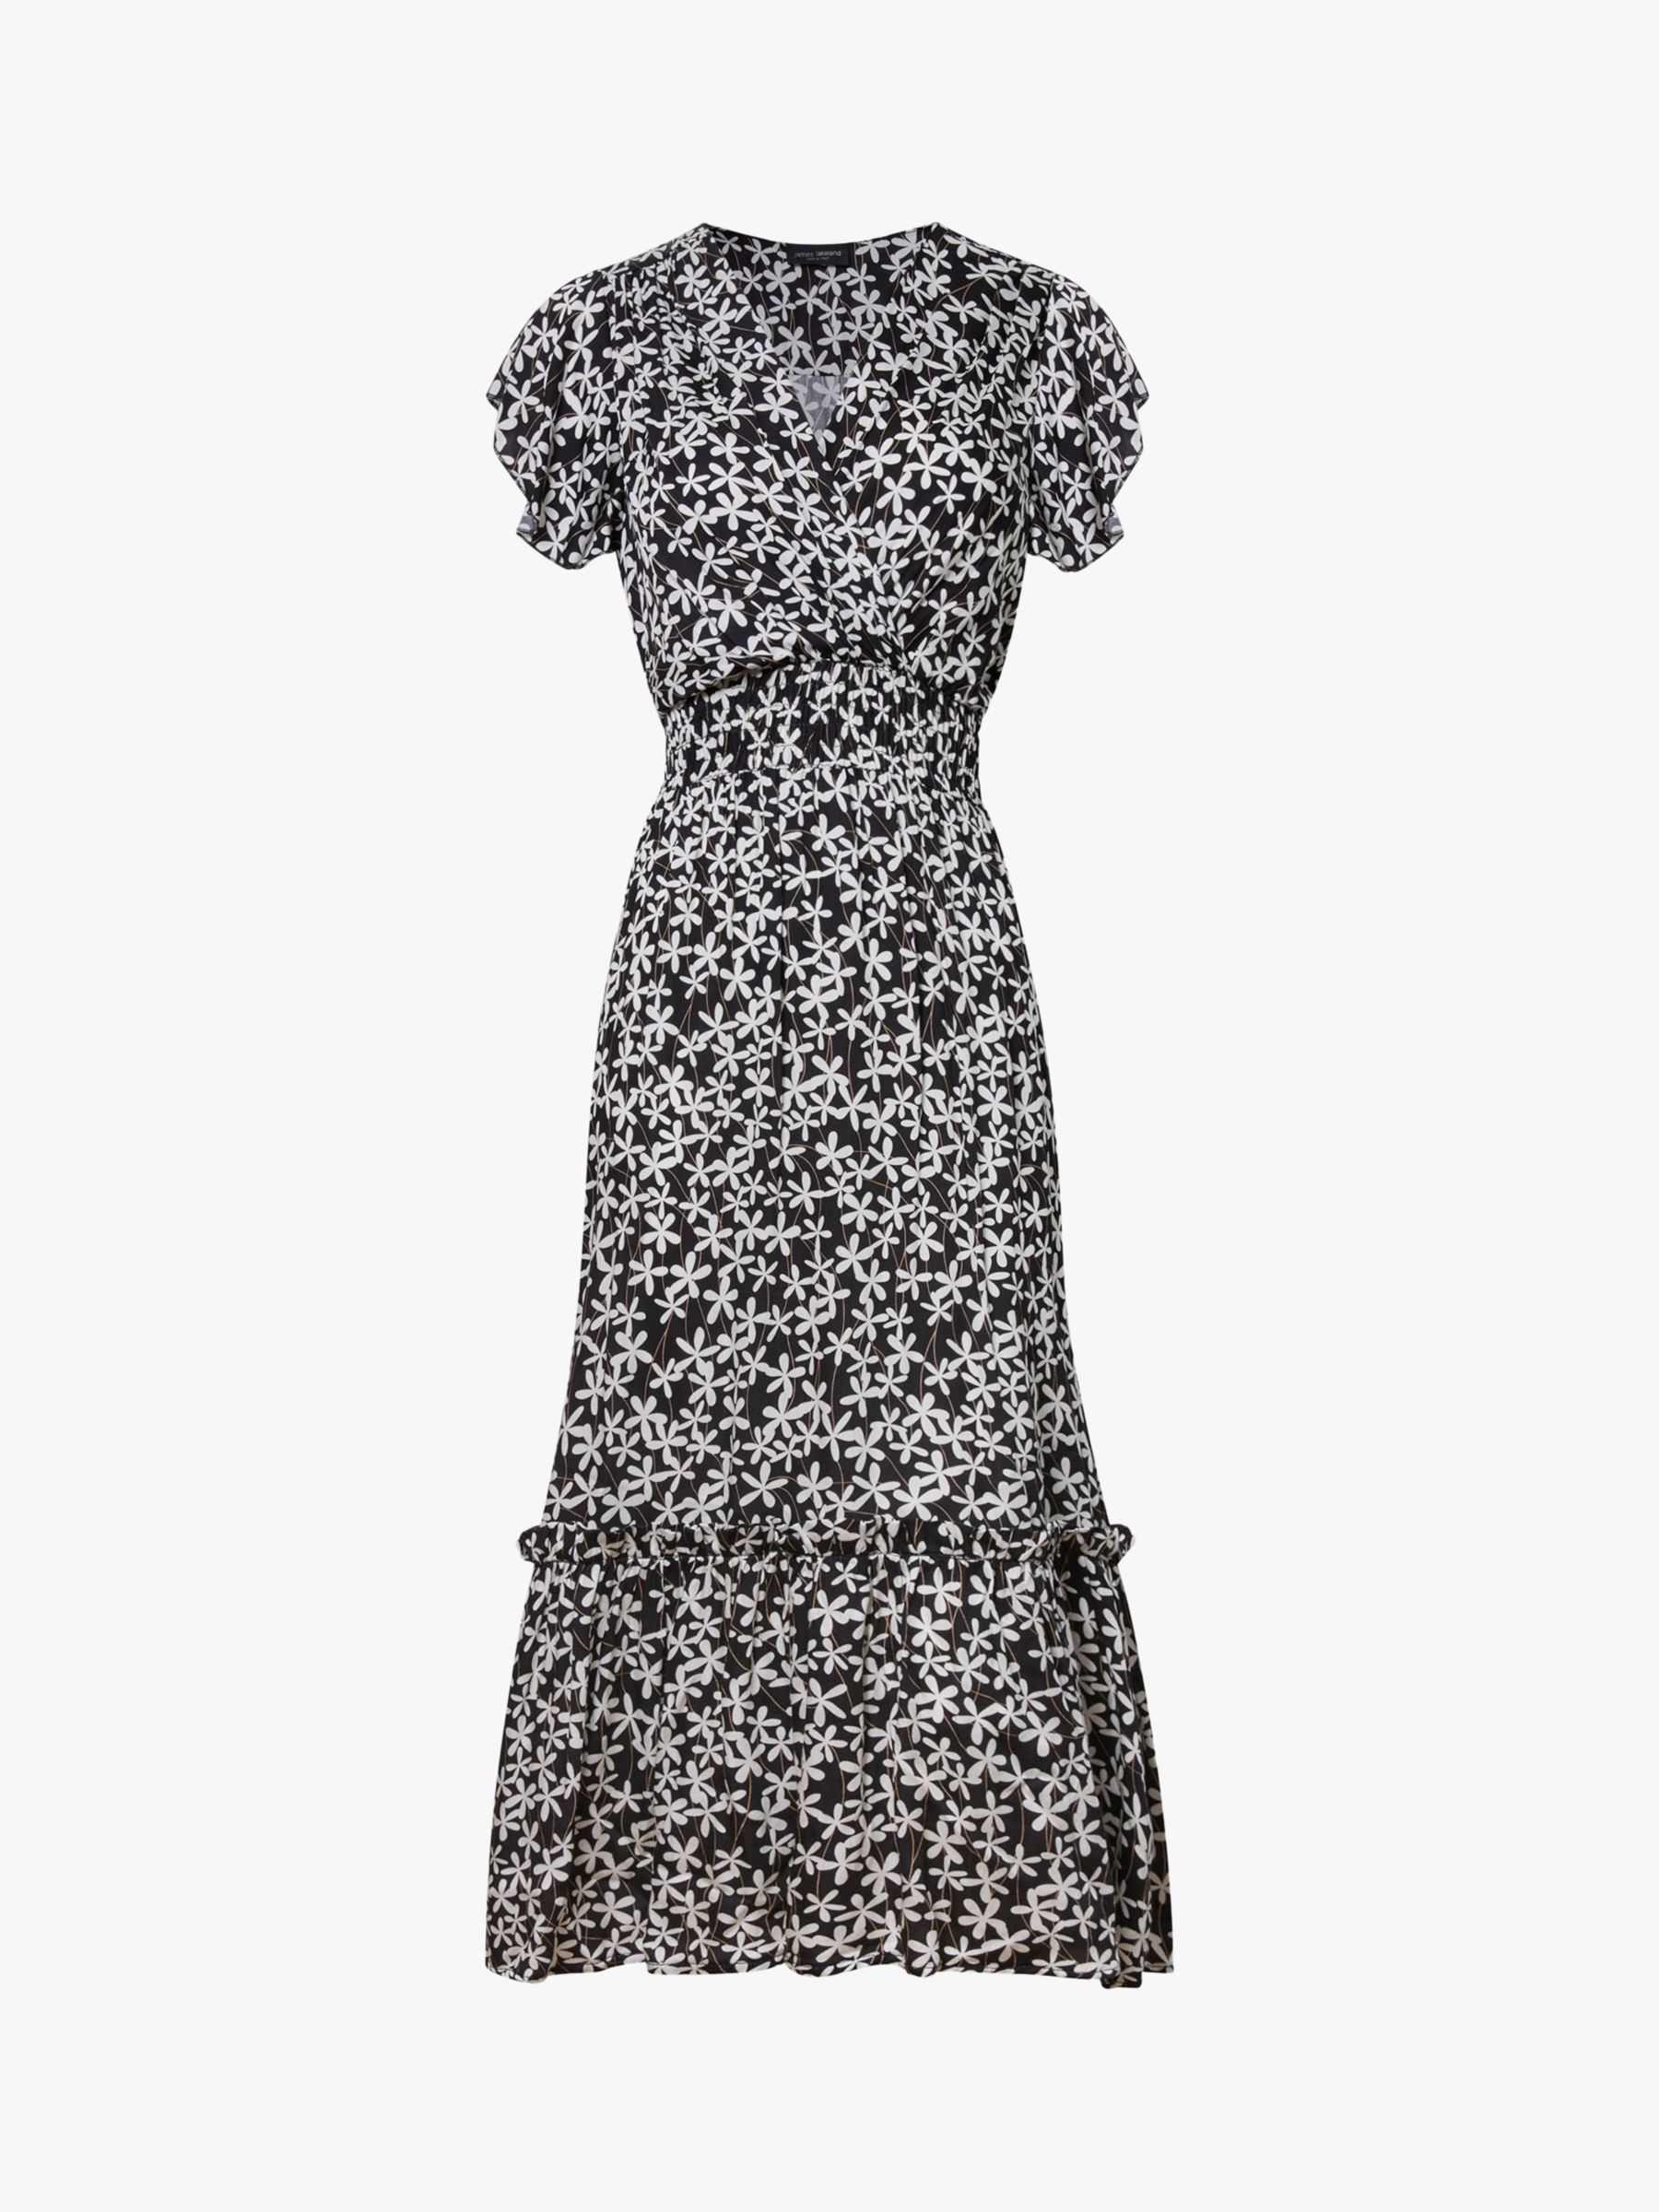 James Lakeland V-neck Ruffle Sleeve Daisy Print Midi Dress, Black/Cream, 16